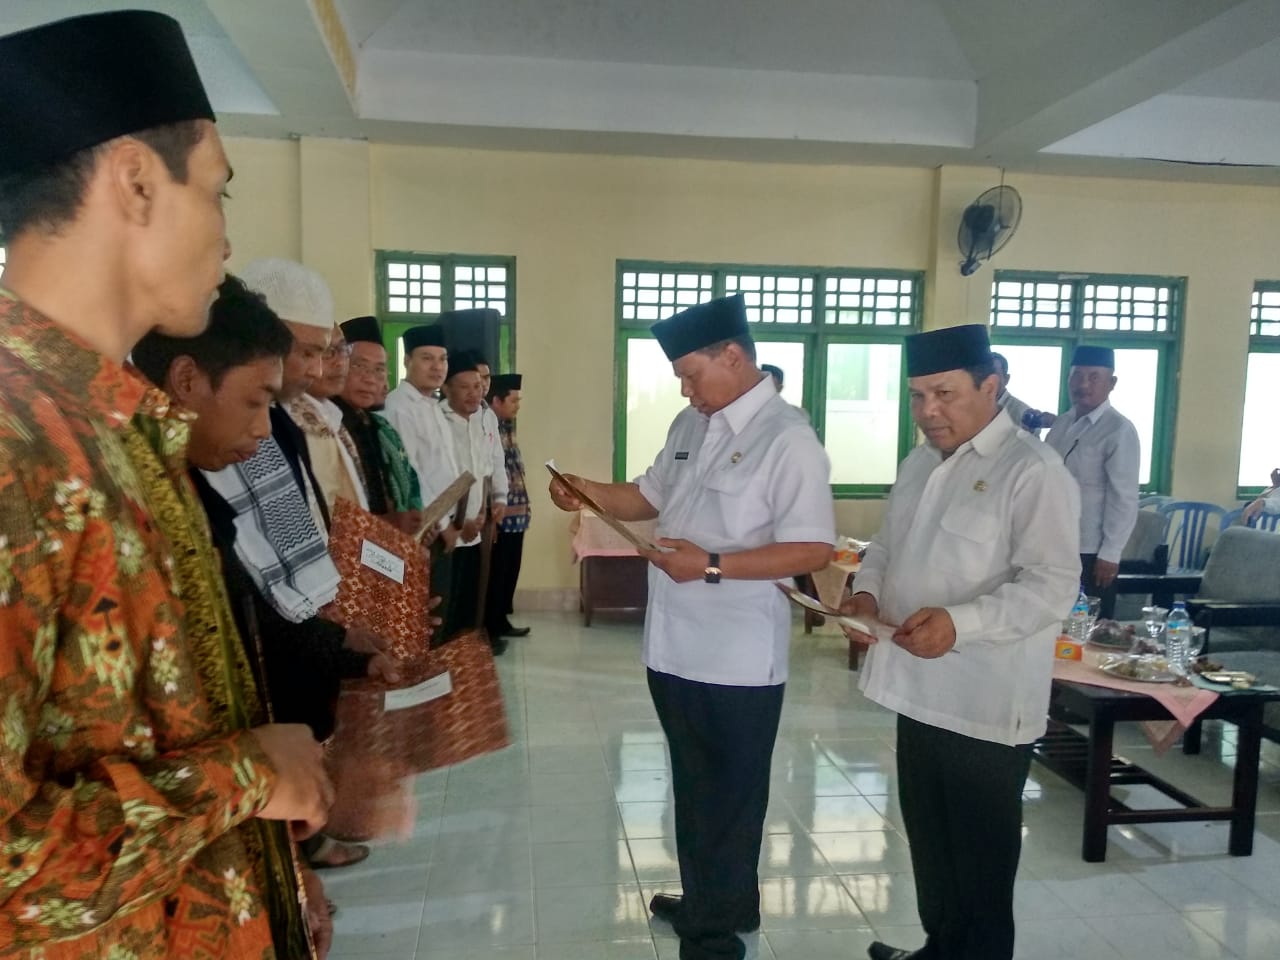 Kepala Dinas Sosial Kab. Lombok Timur mendampingi Bapak Bupati Lombok Timur menyerahkan Sertifikat Akreditasi Lembaga Kesejahteraan Sosial Anak di acara pelantikan Pengurus FIK LKS Lombok Timur.